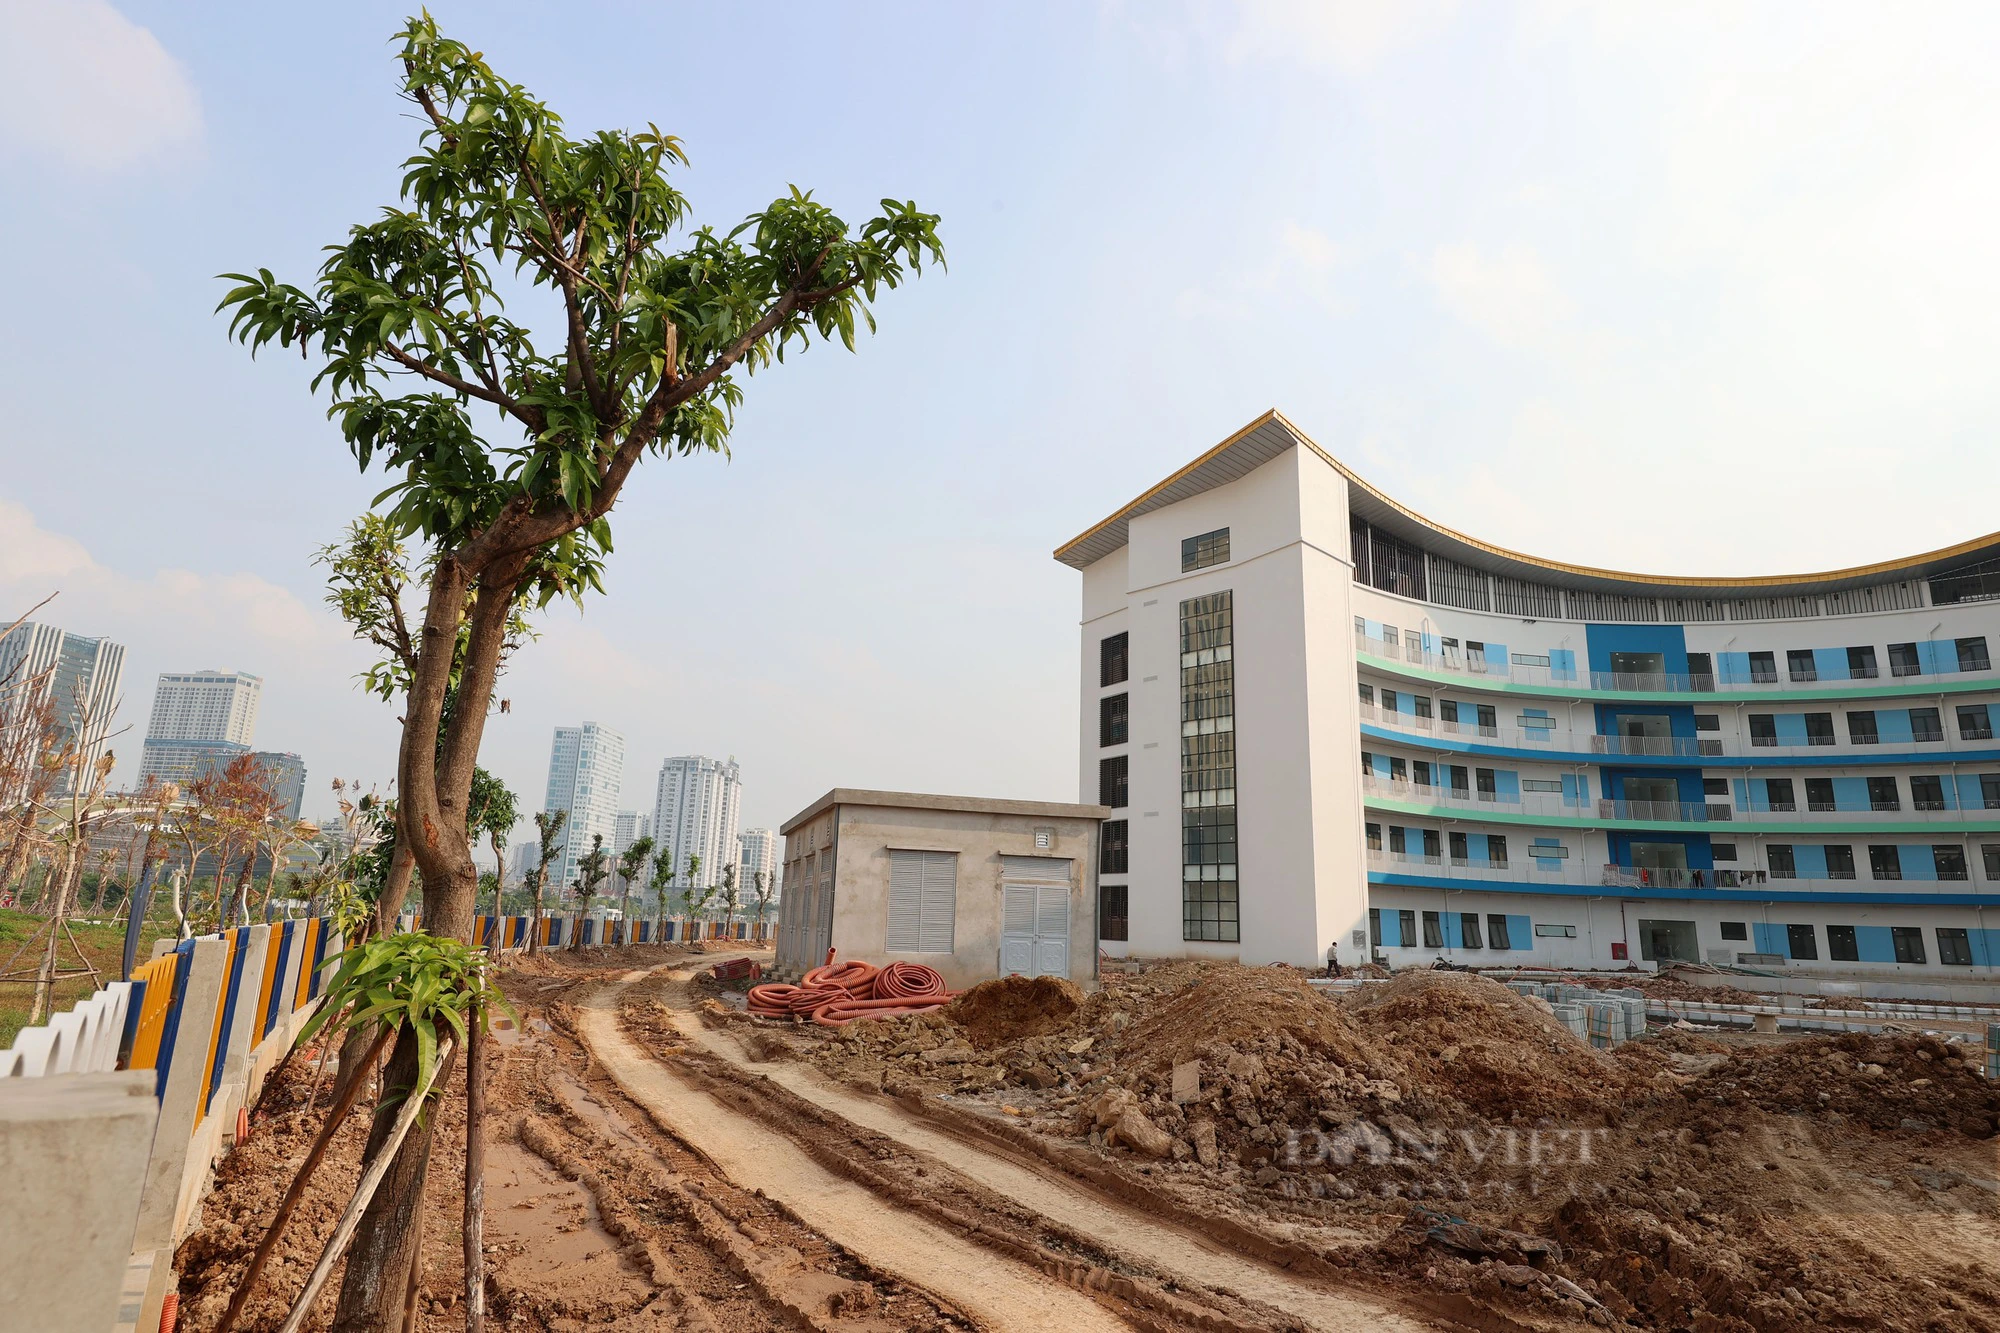 Sau 2 năm thi công, dự án Cung thiếu nhi Hà Nội trị giá 1.300 tỷ đồng đã thành hình - Ảnh 11.